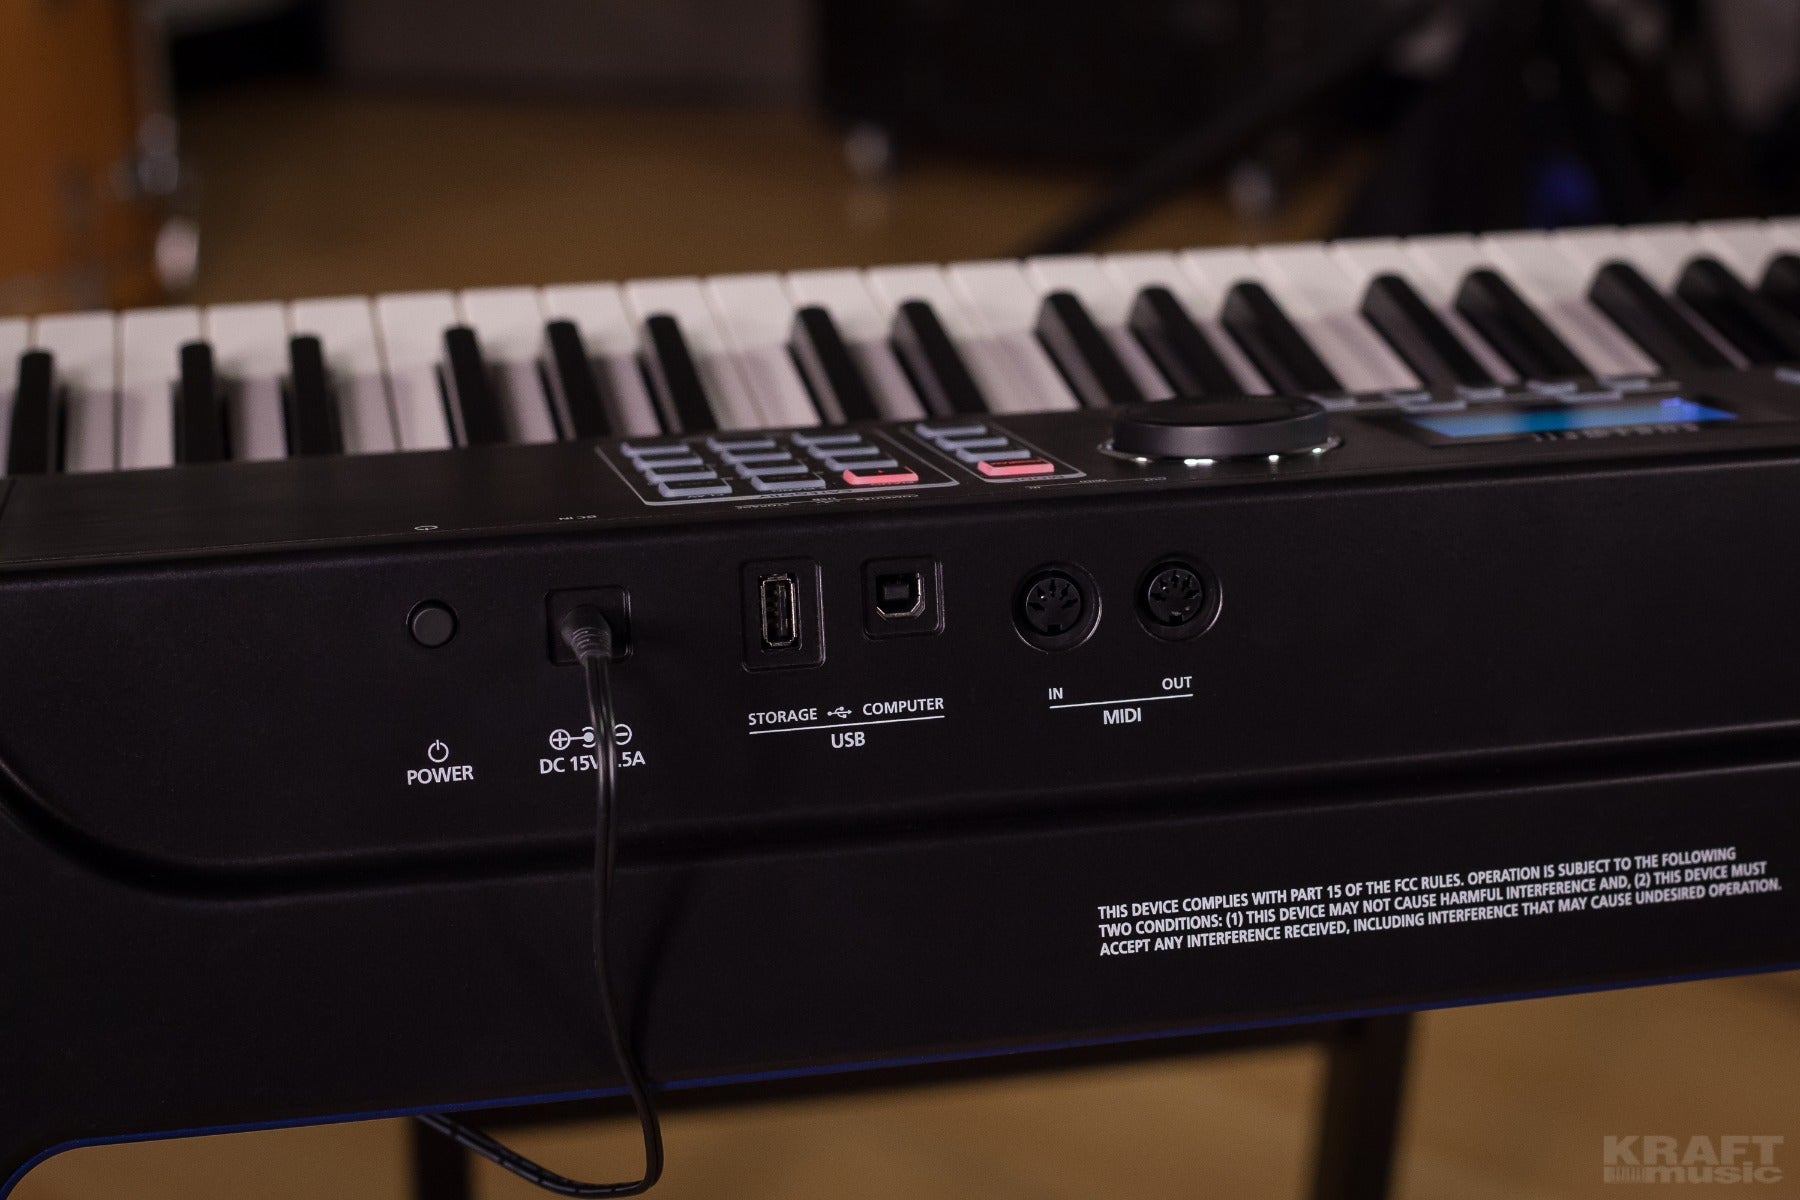 Kurzweil SP6 88-Key Stage Piano